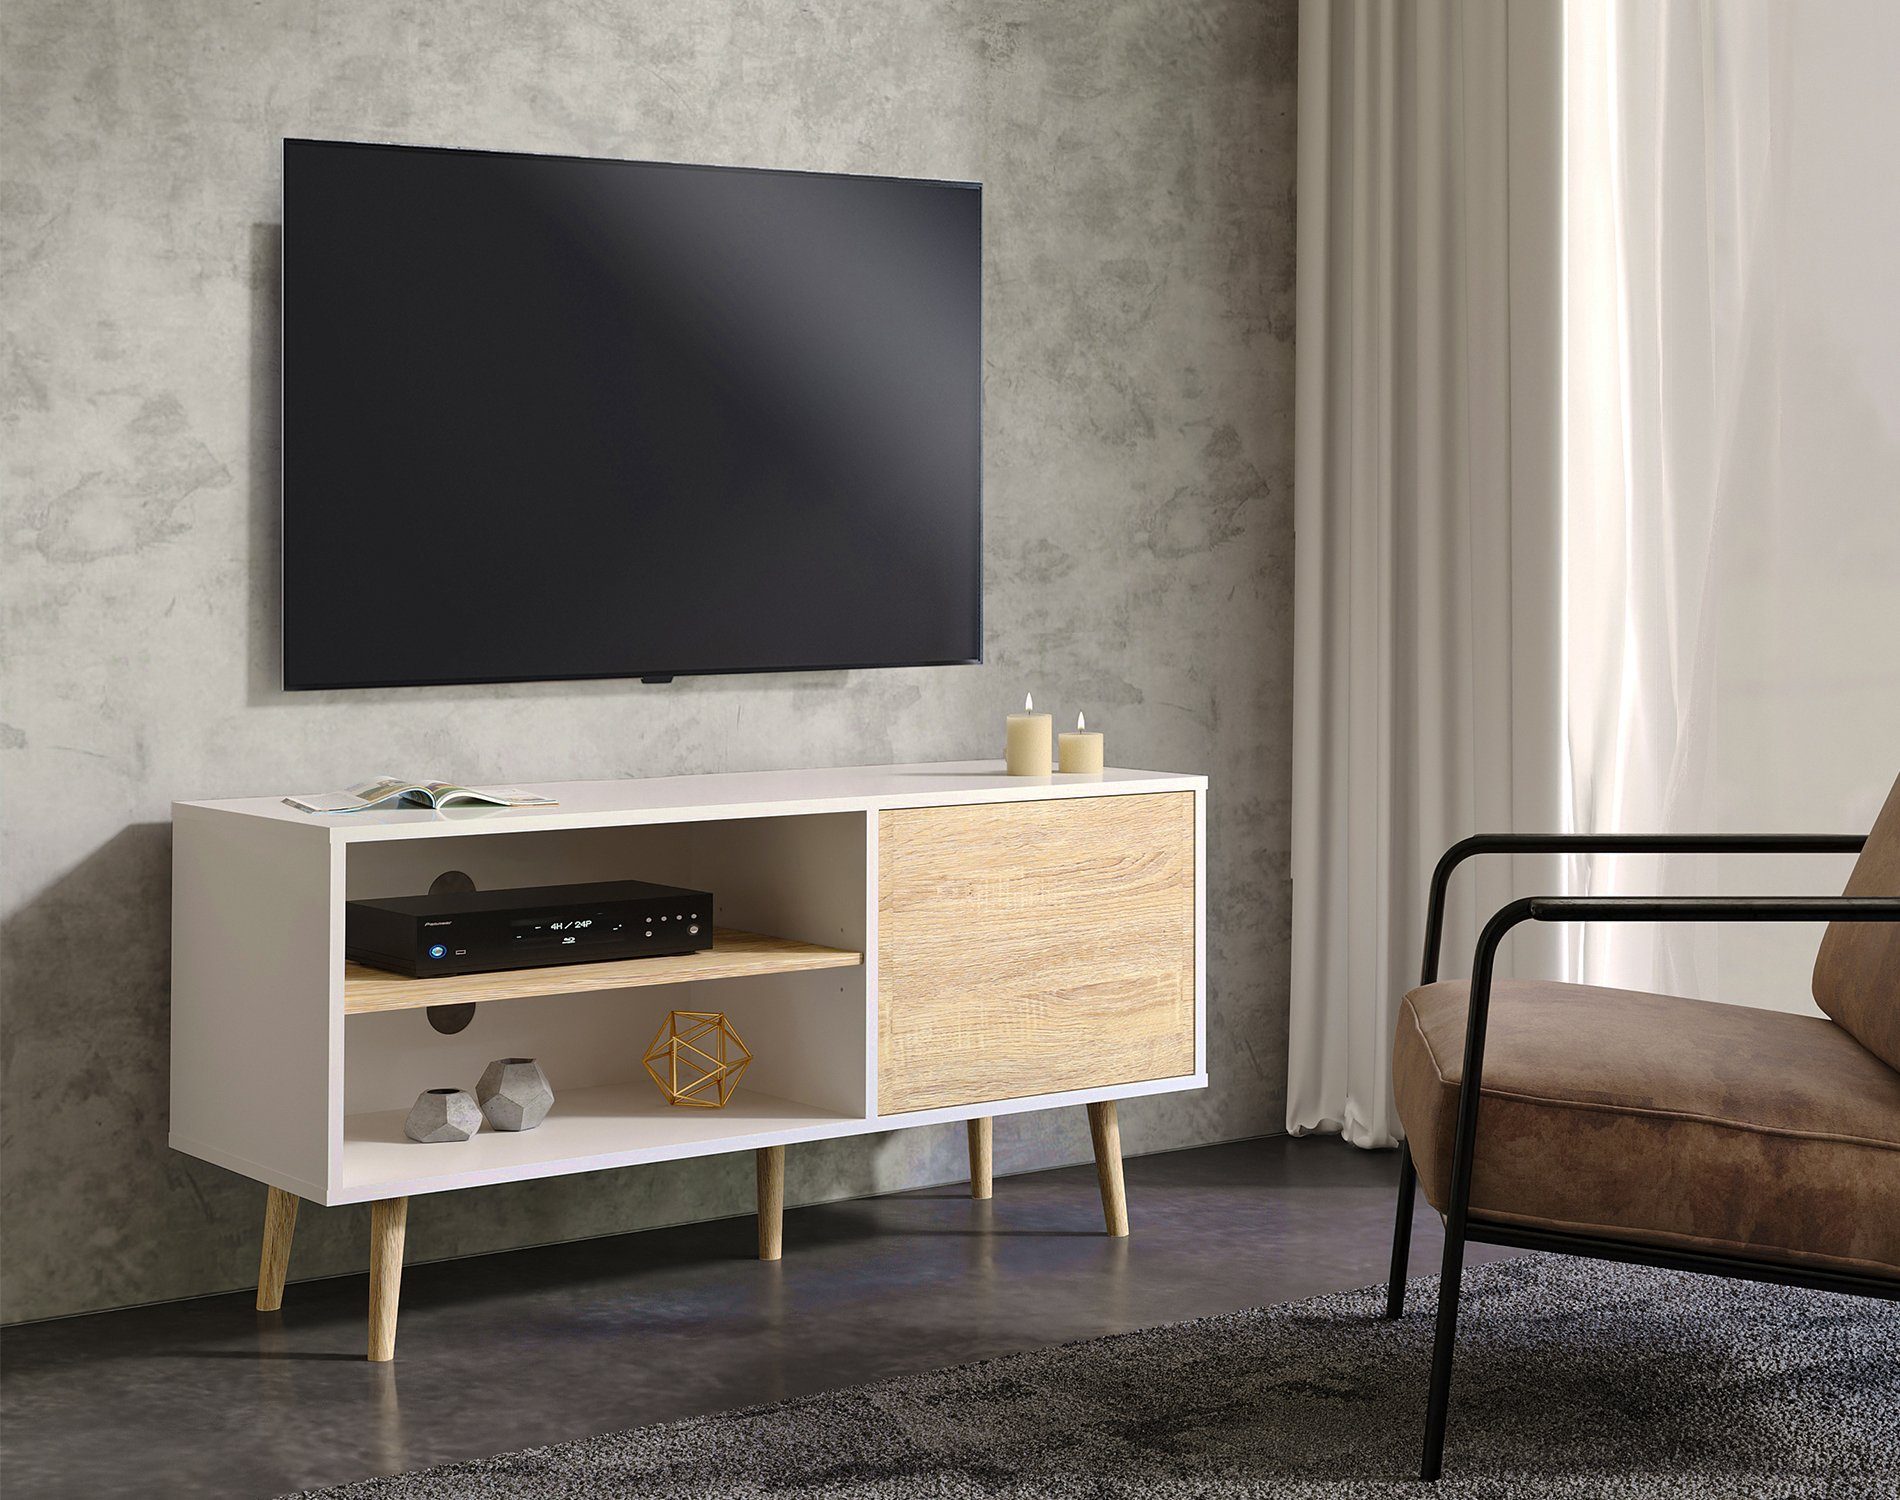 WAMPAT TV-Schrank (Skandinavisch Design TV Lowboard Weiß und Eiche) mit  Türen und Verstellbare Regal